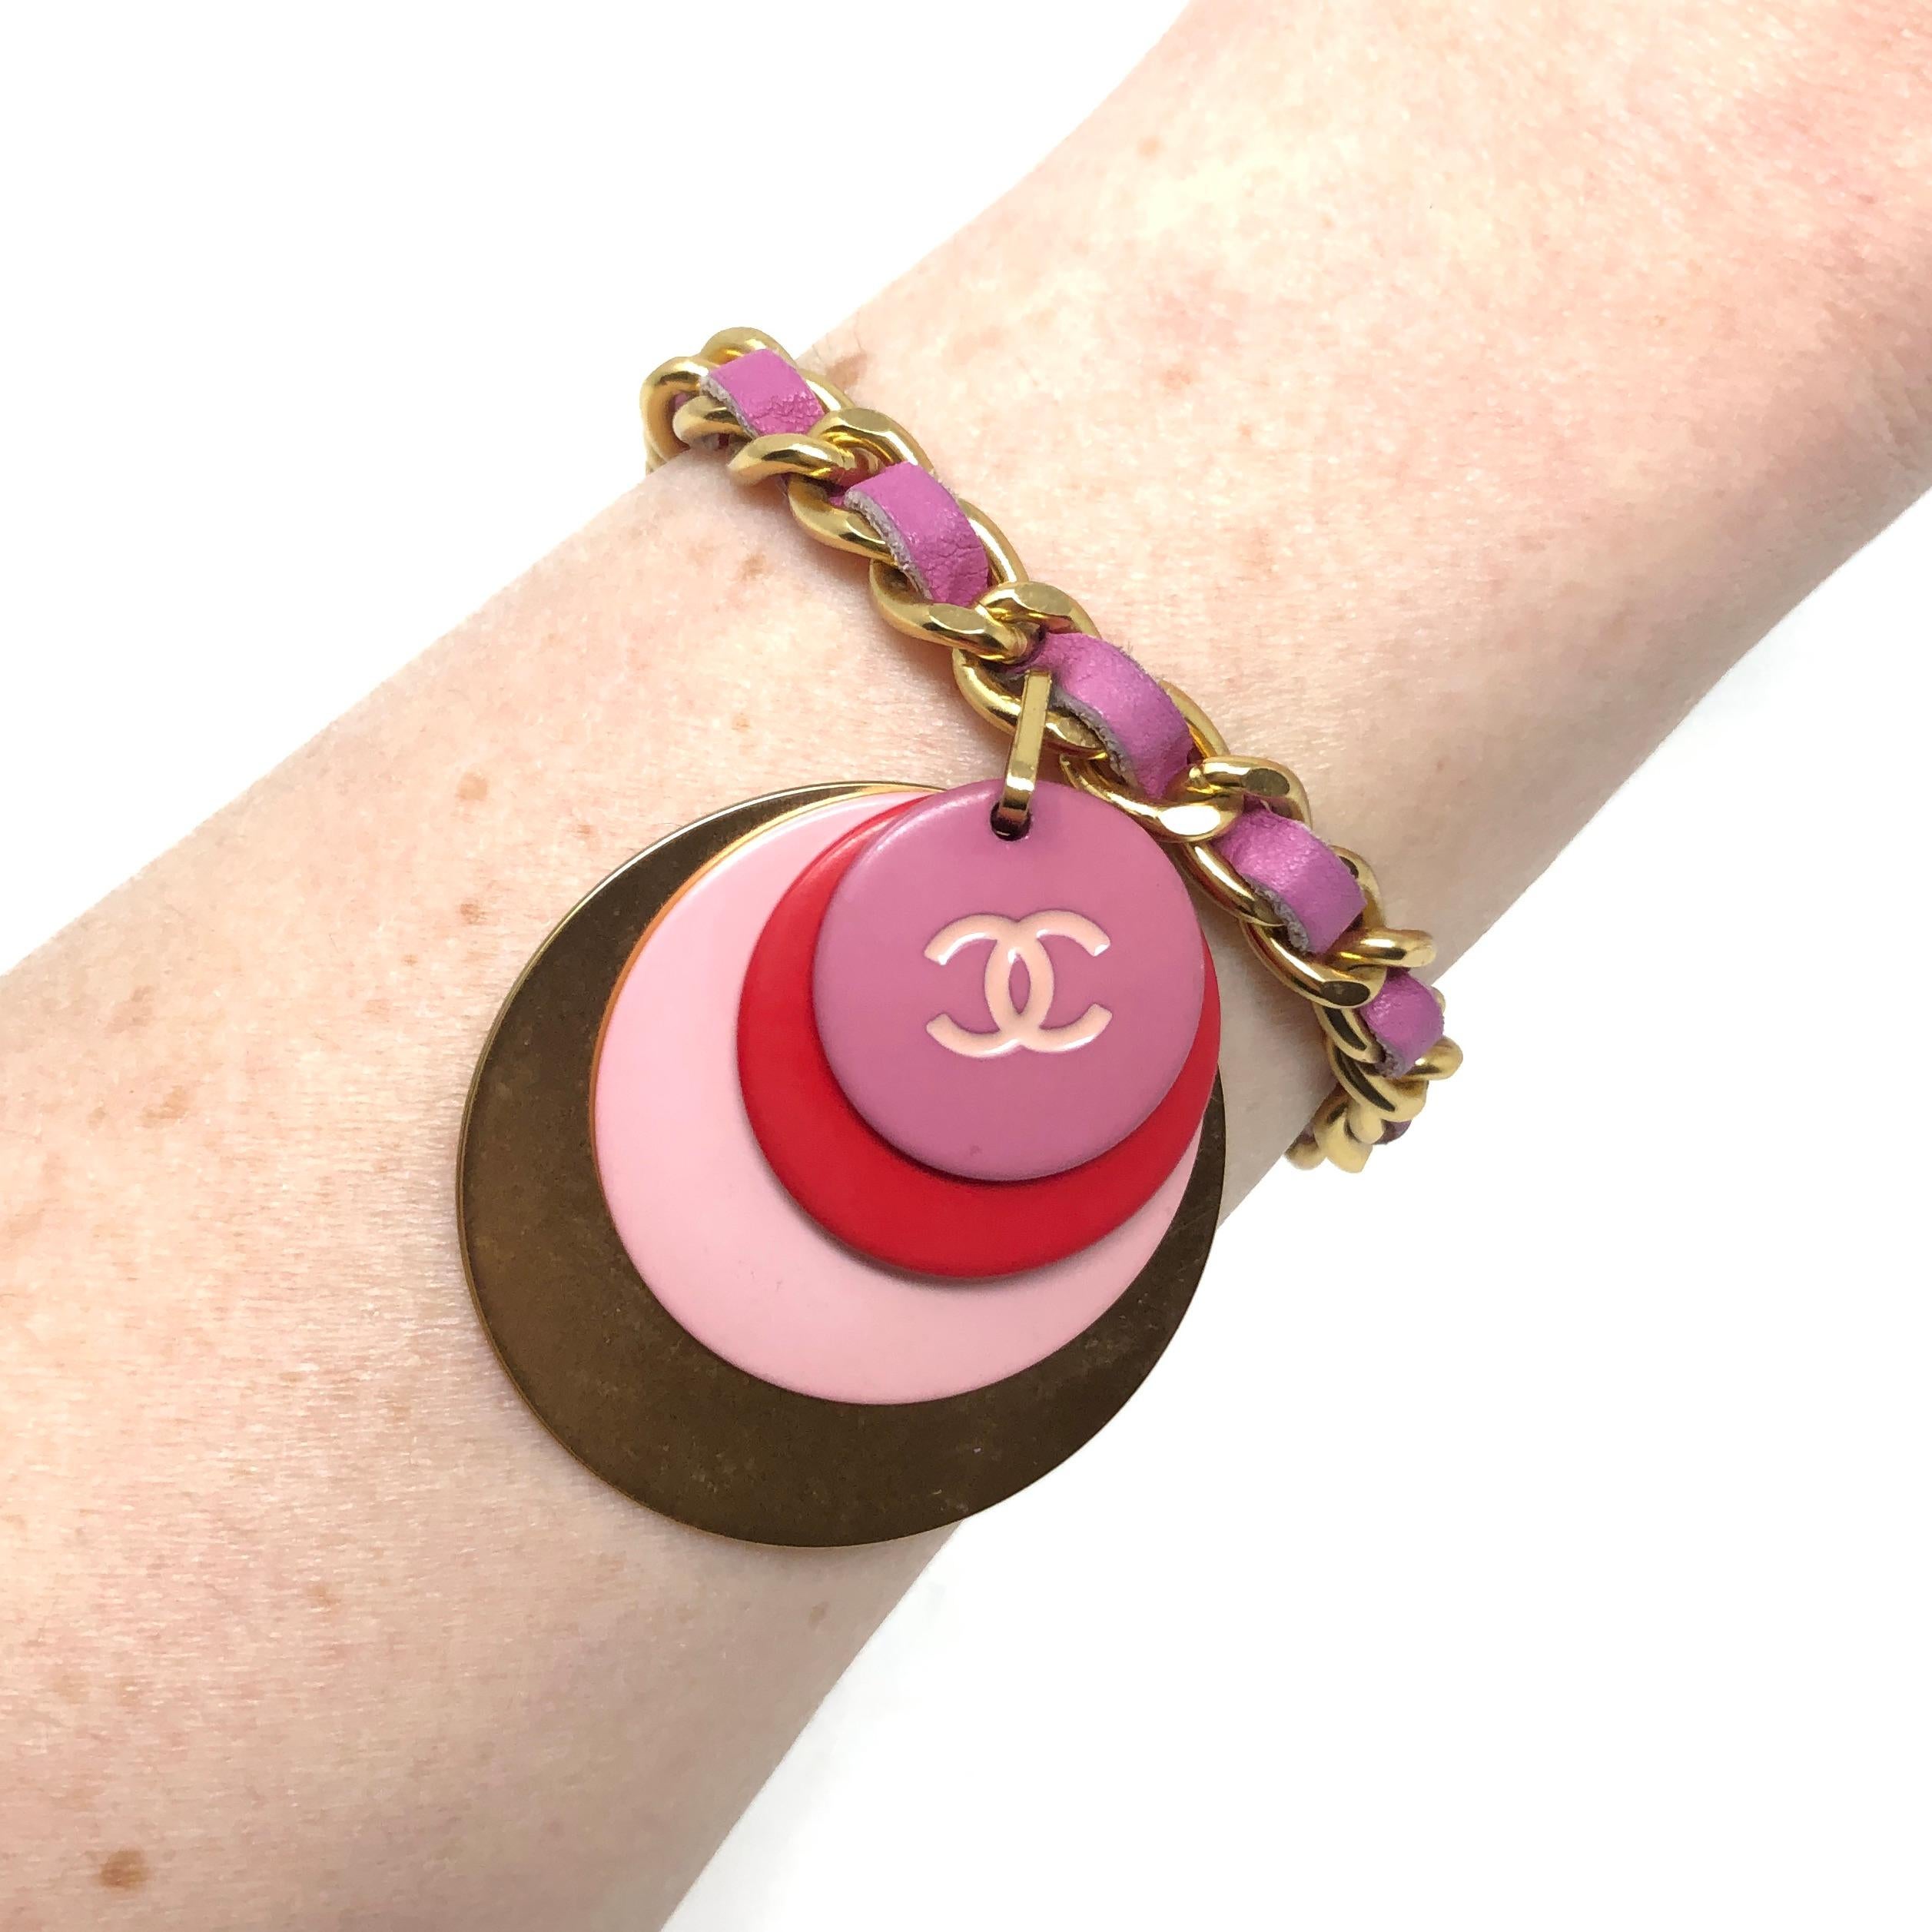 Dieses schicke Armband wurde von Chanel im Jahr 2001 kreiert.

Zustandsbericht:
Ausgezeichnet

Die Details...
Dieses Armband besteht aus einer vergoldeten Panzerkette, die mit einem rosafarbenen Lederband gefädelt ist. An der Kette hängt ein Charme,